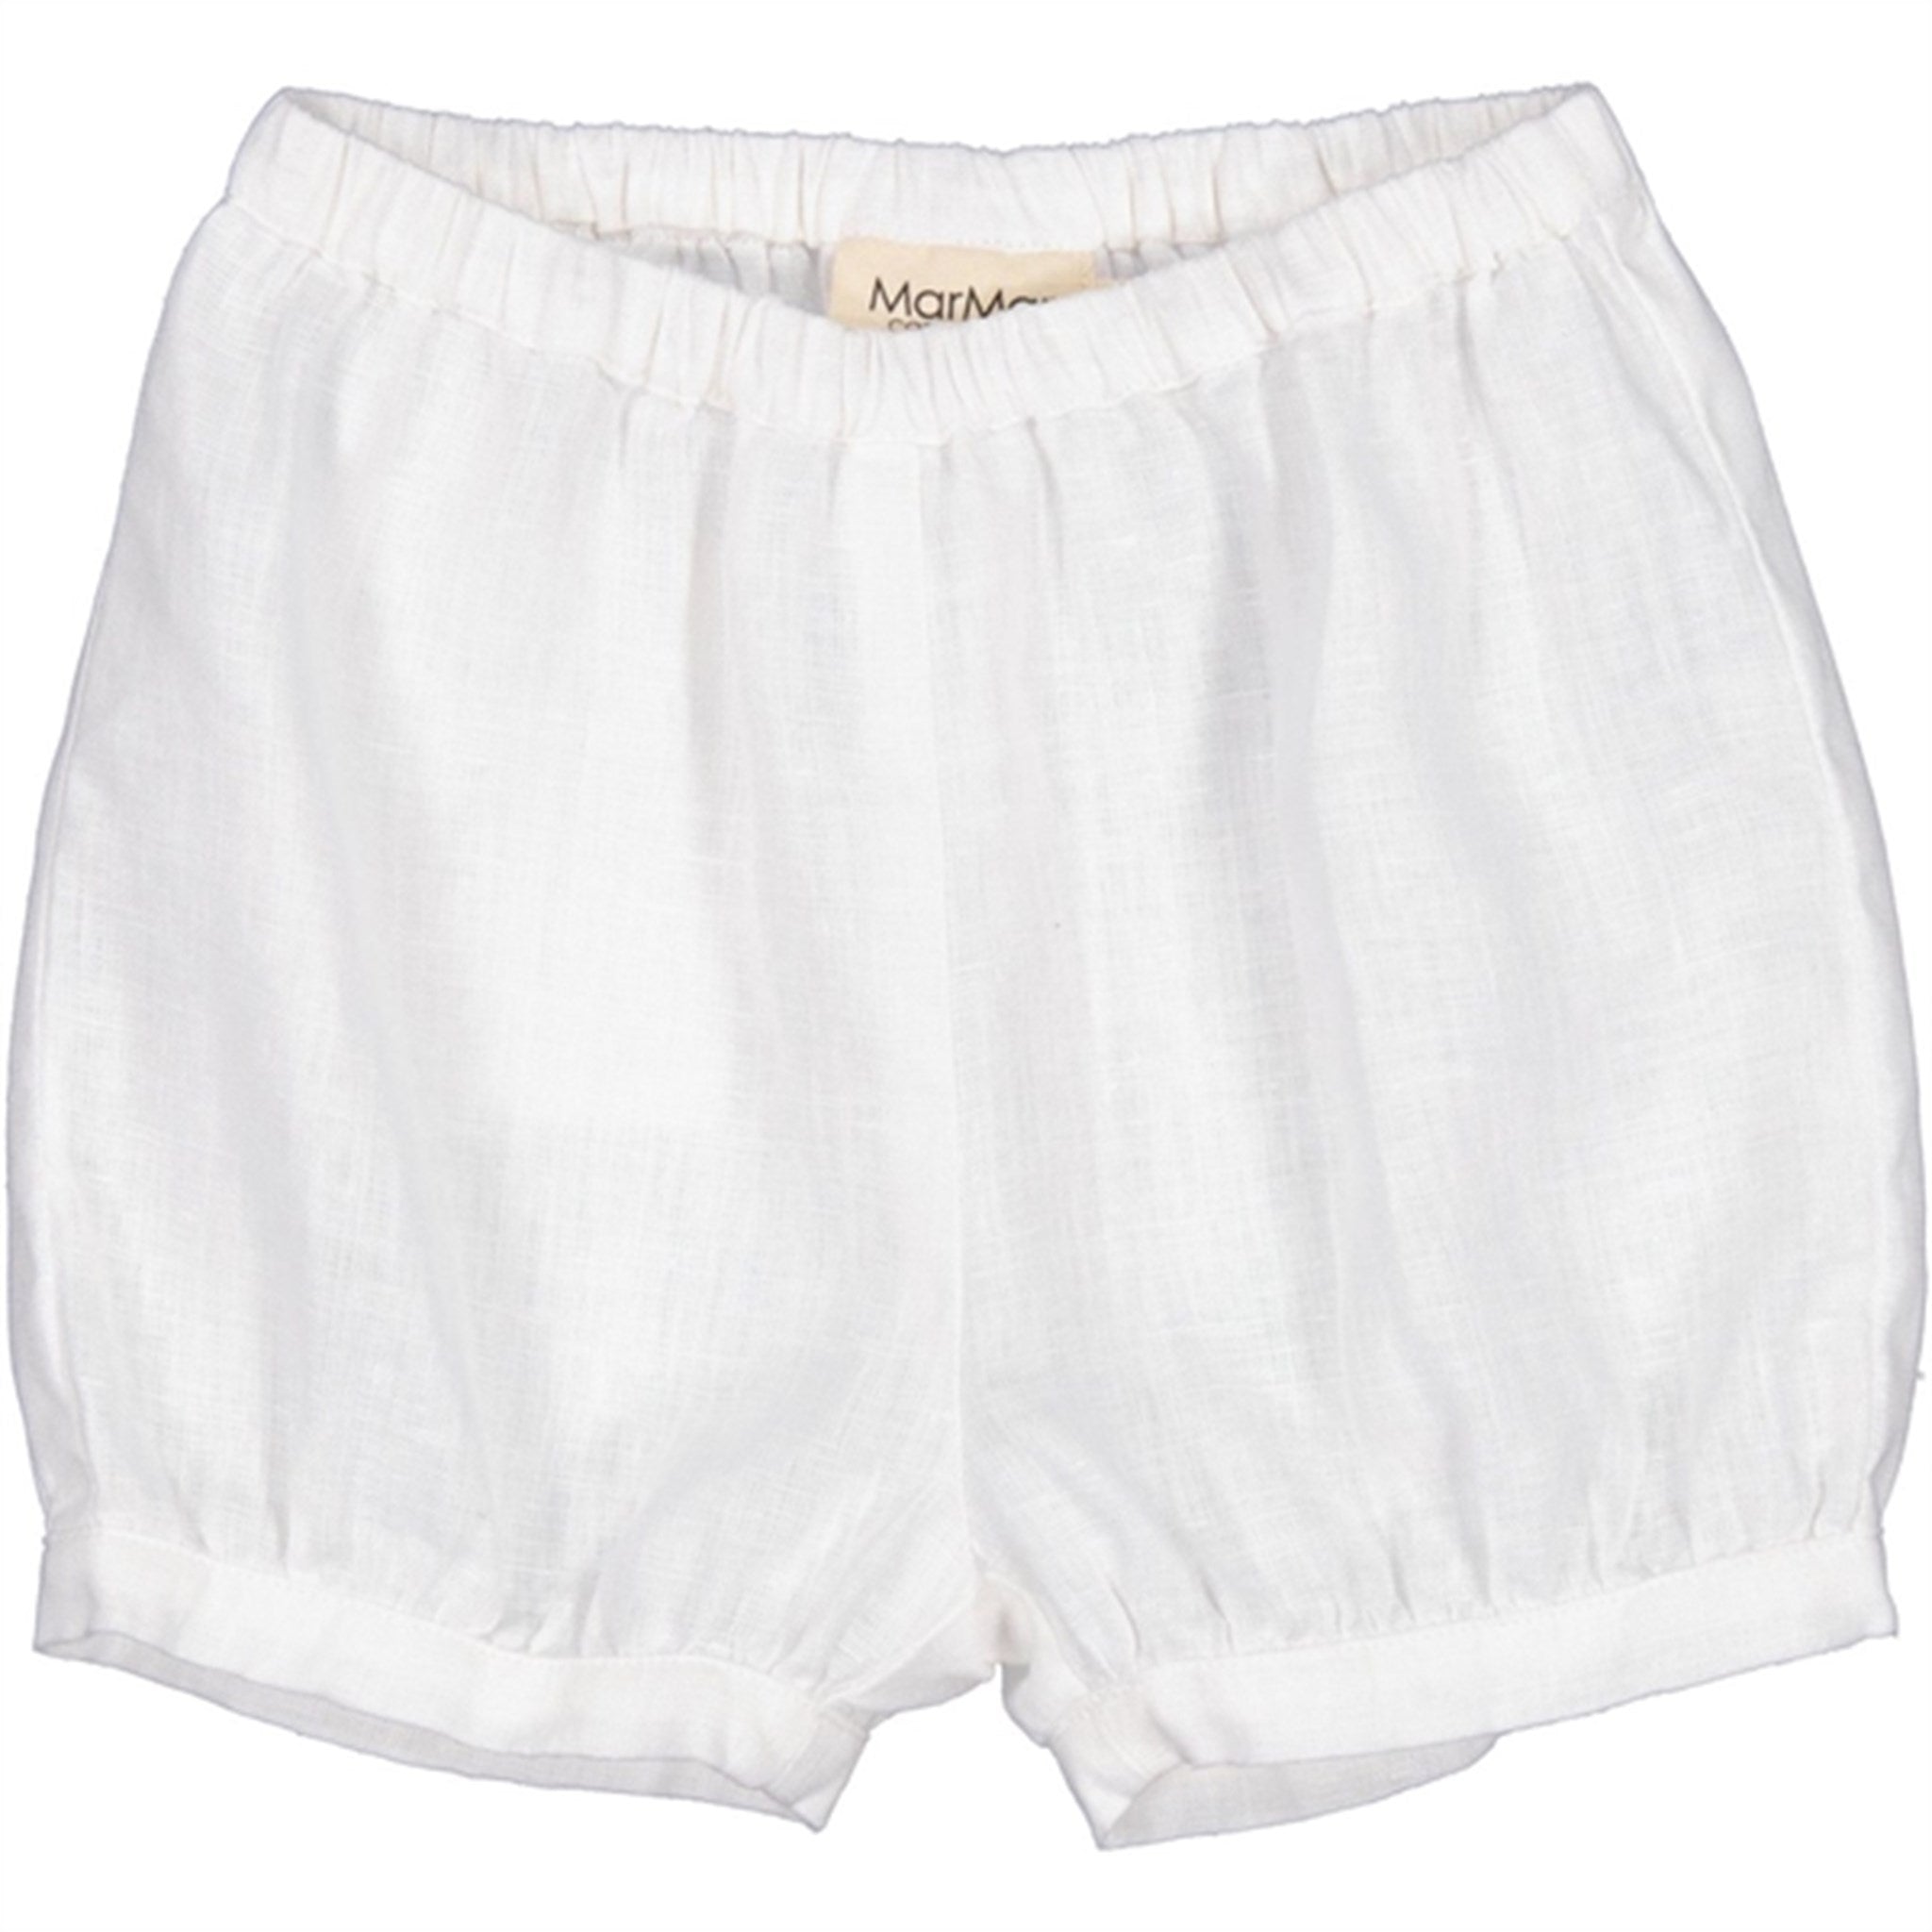 MarMar White Pabi S Shorts